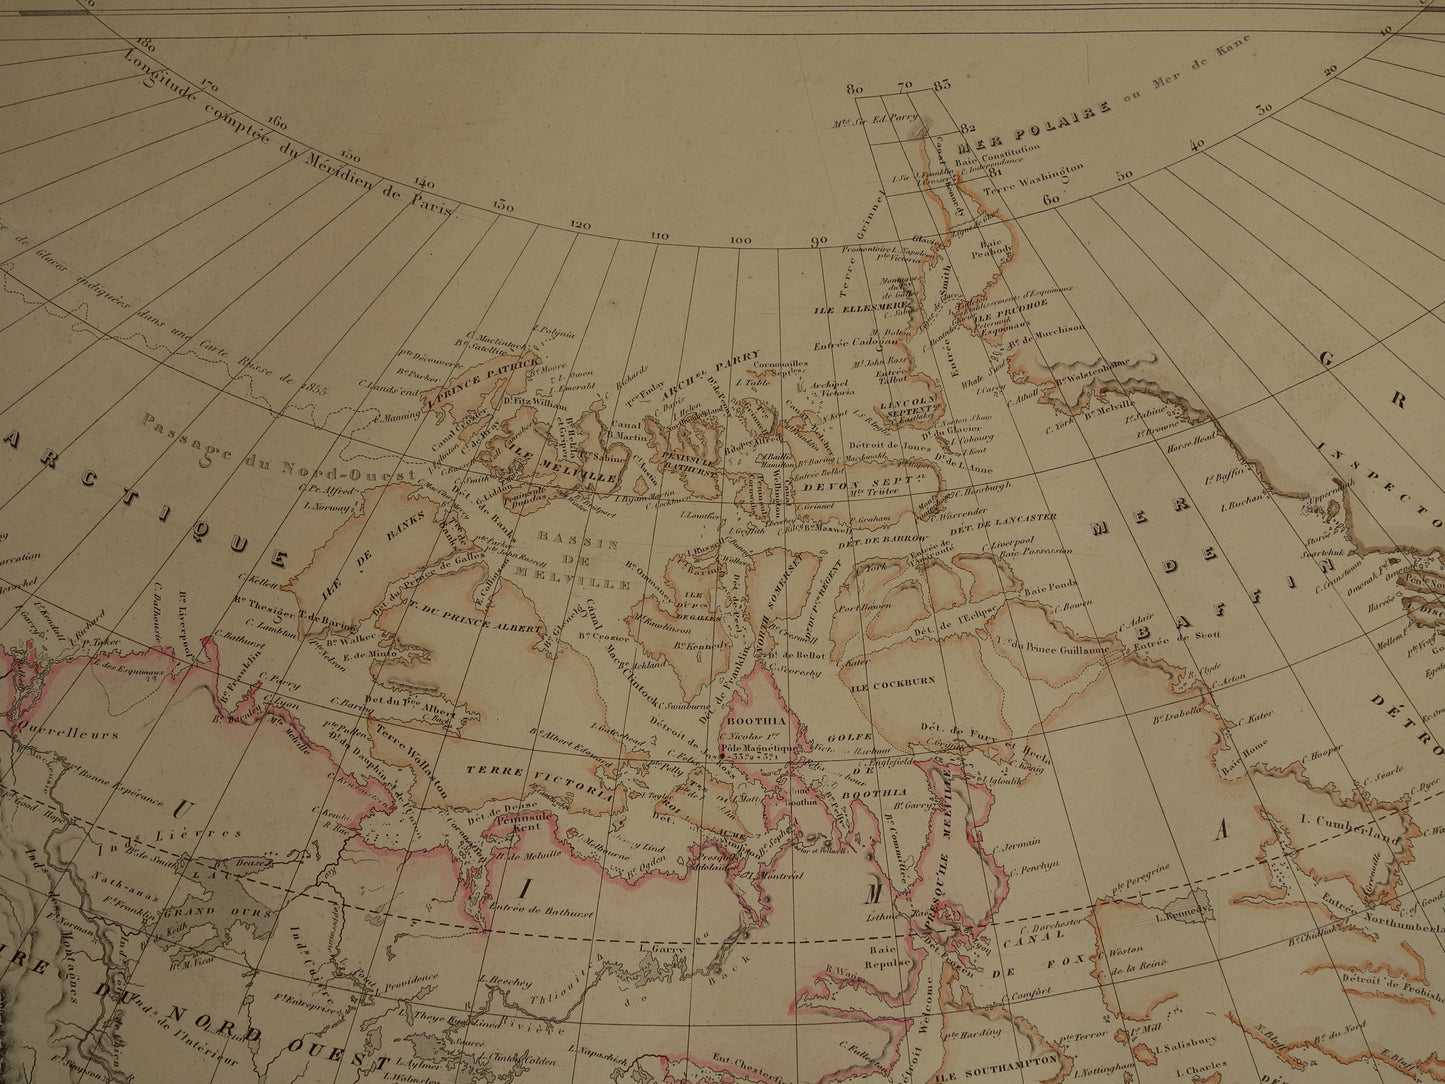 NOORD-AMERIKA grote oude kaart van VS Canada Mexico 140+ jaar oude landkaart van continent uit 1880 (circa) - originele vintage historische kaarten